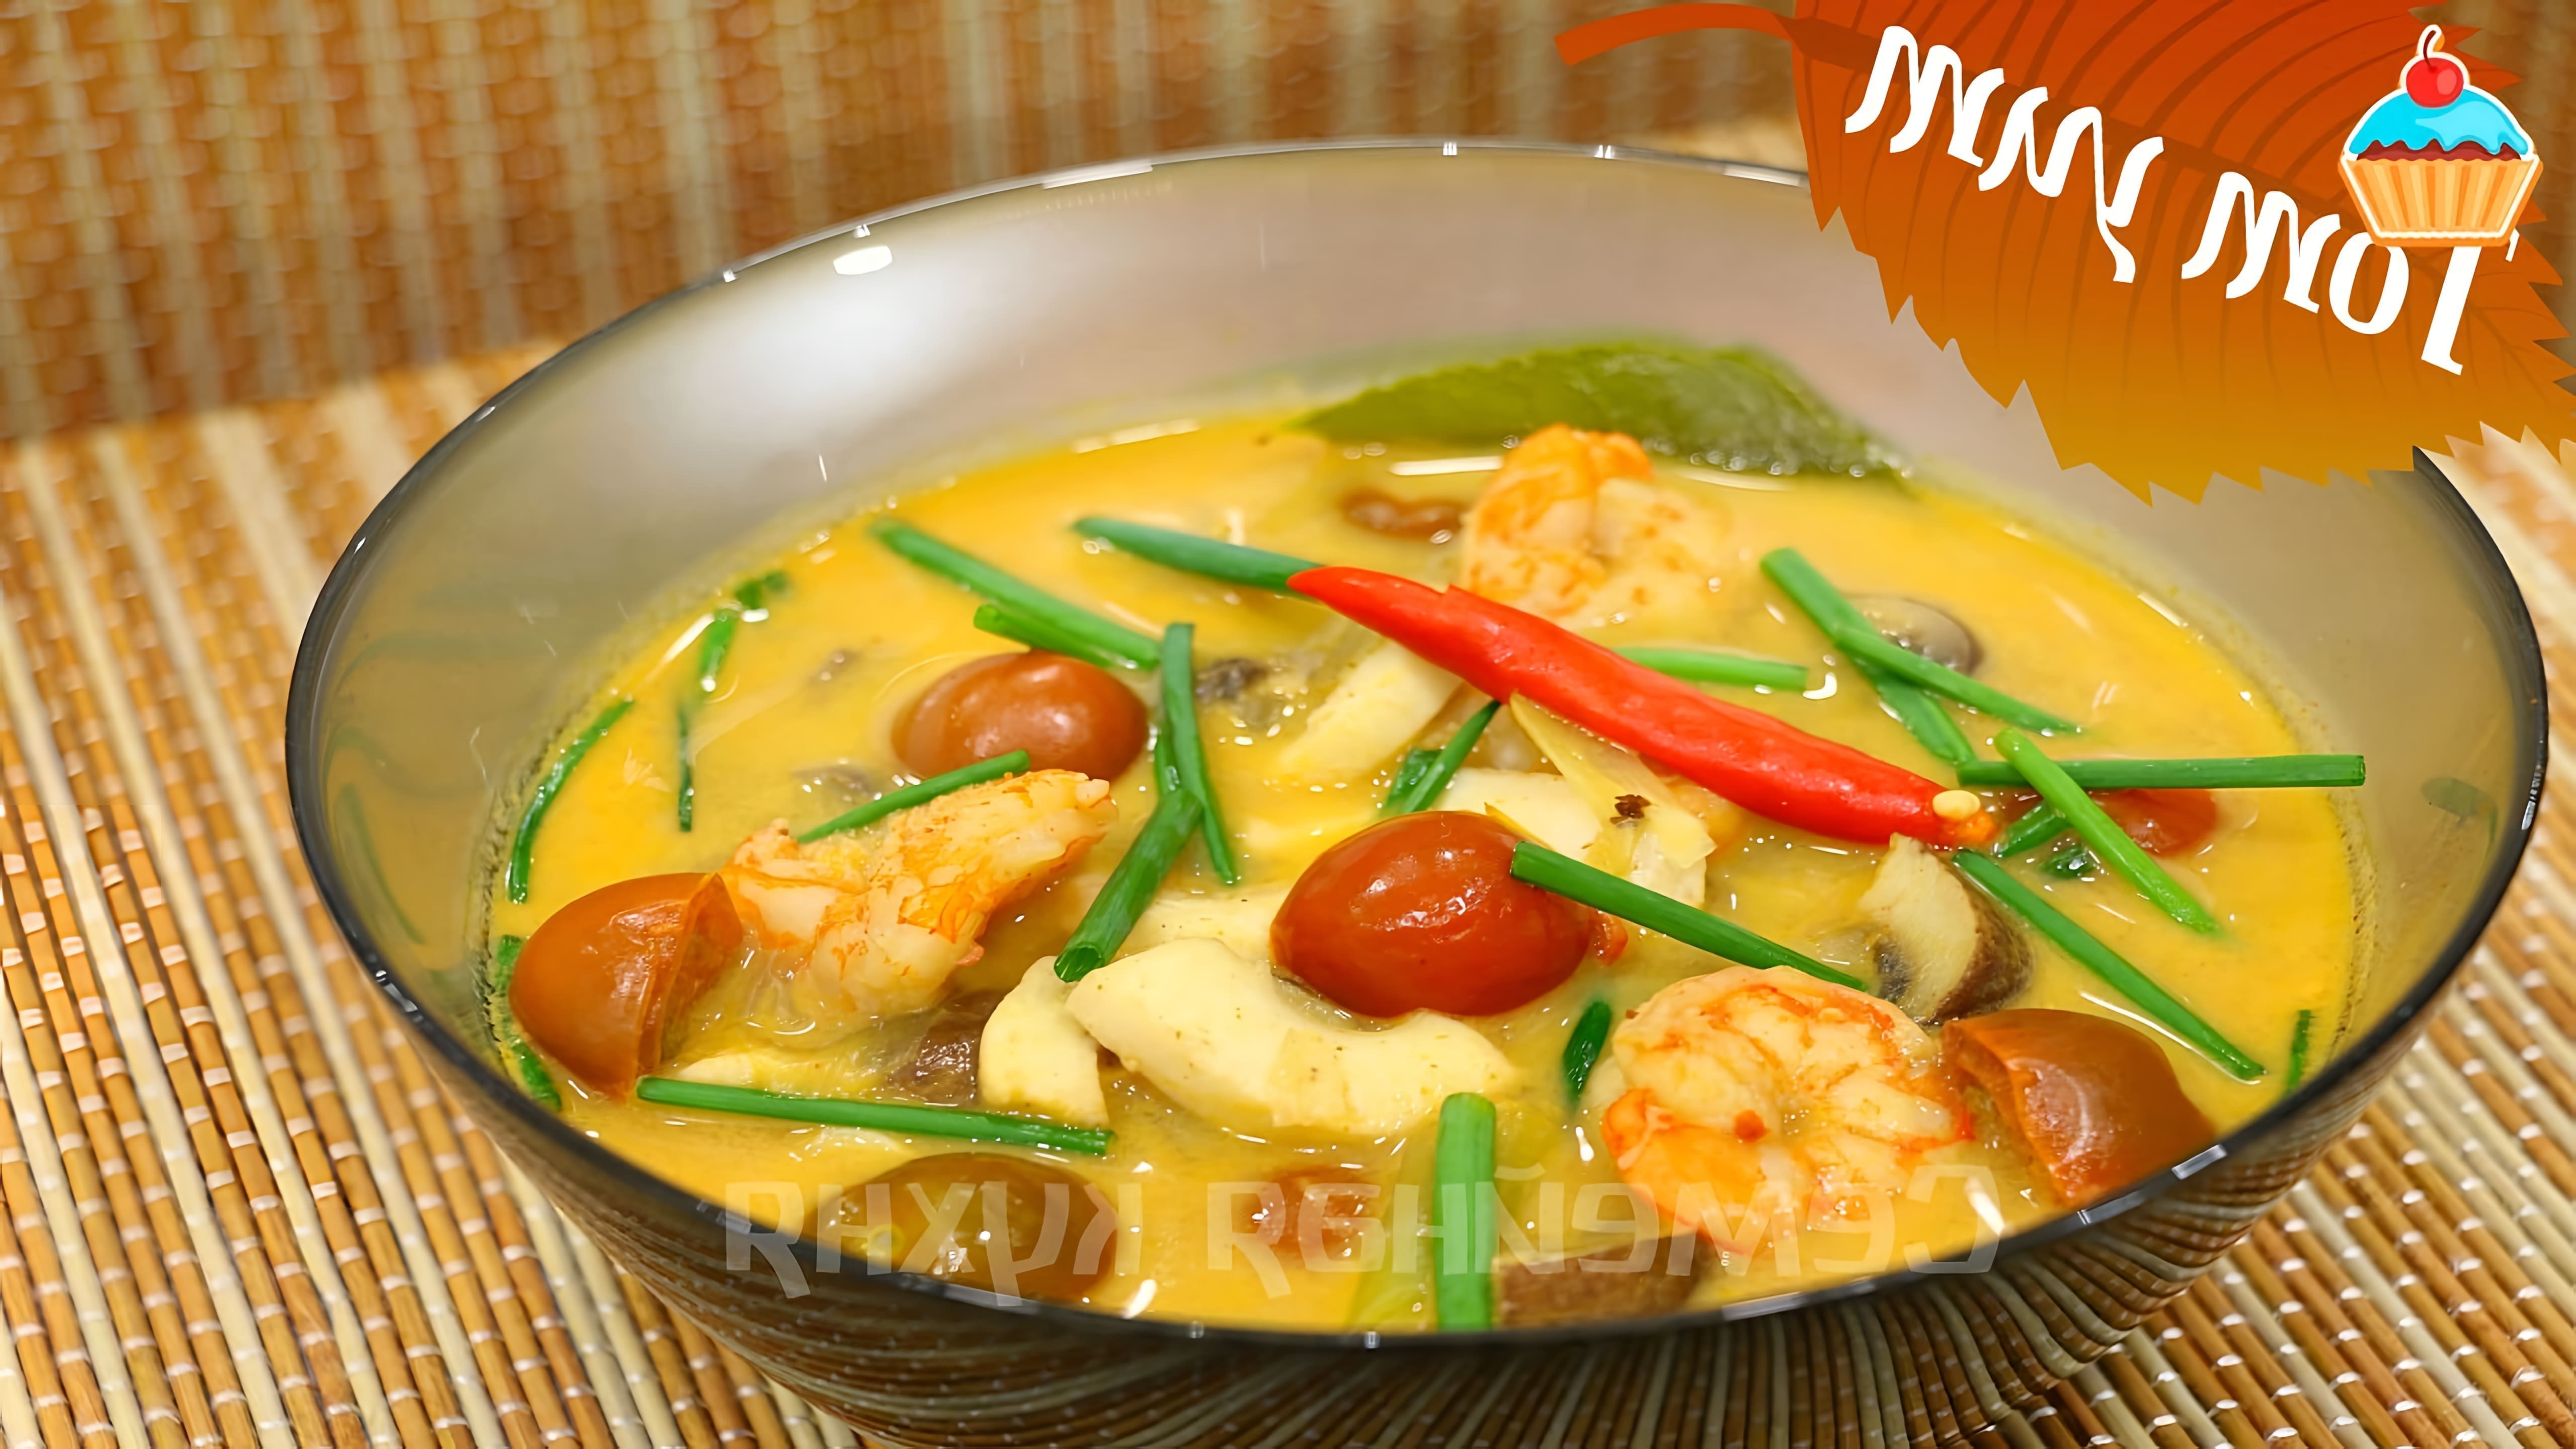 В этом видео демонстрируется процесс приготовления тайского кисло-острого супа "Том Ям"